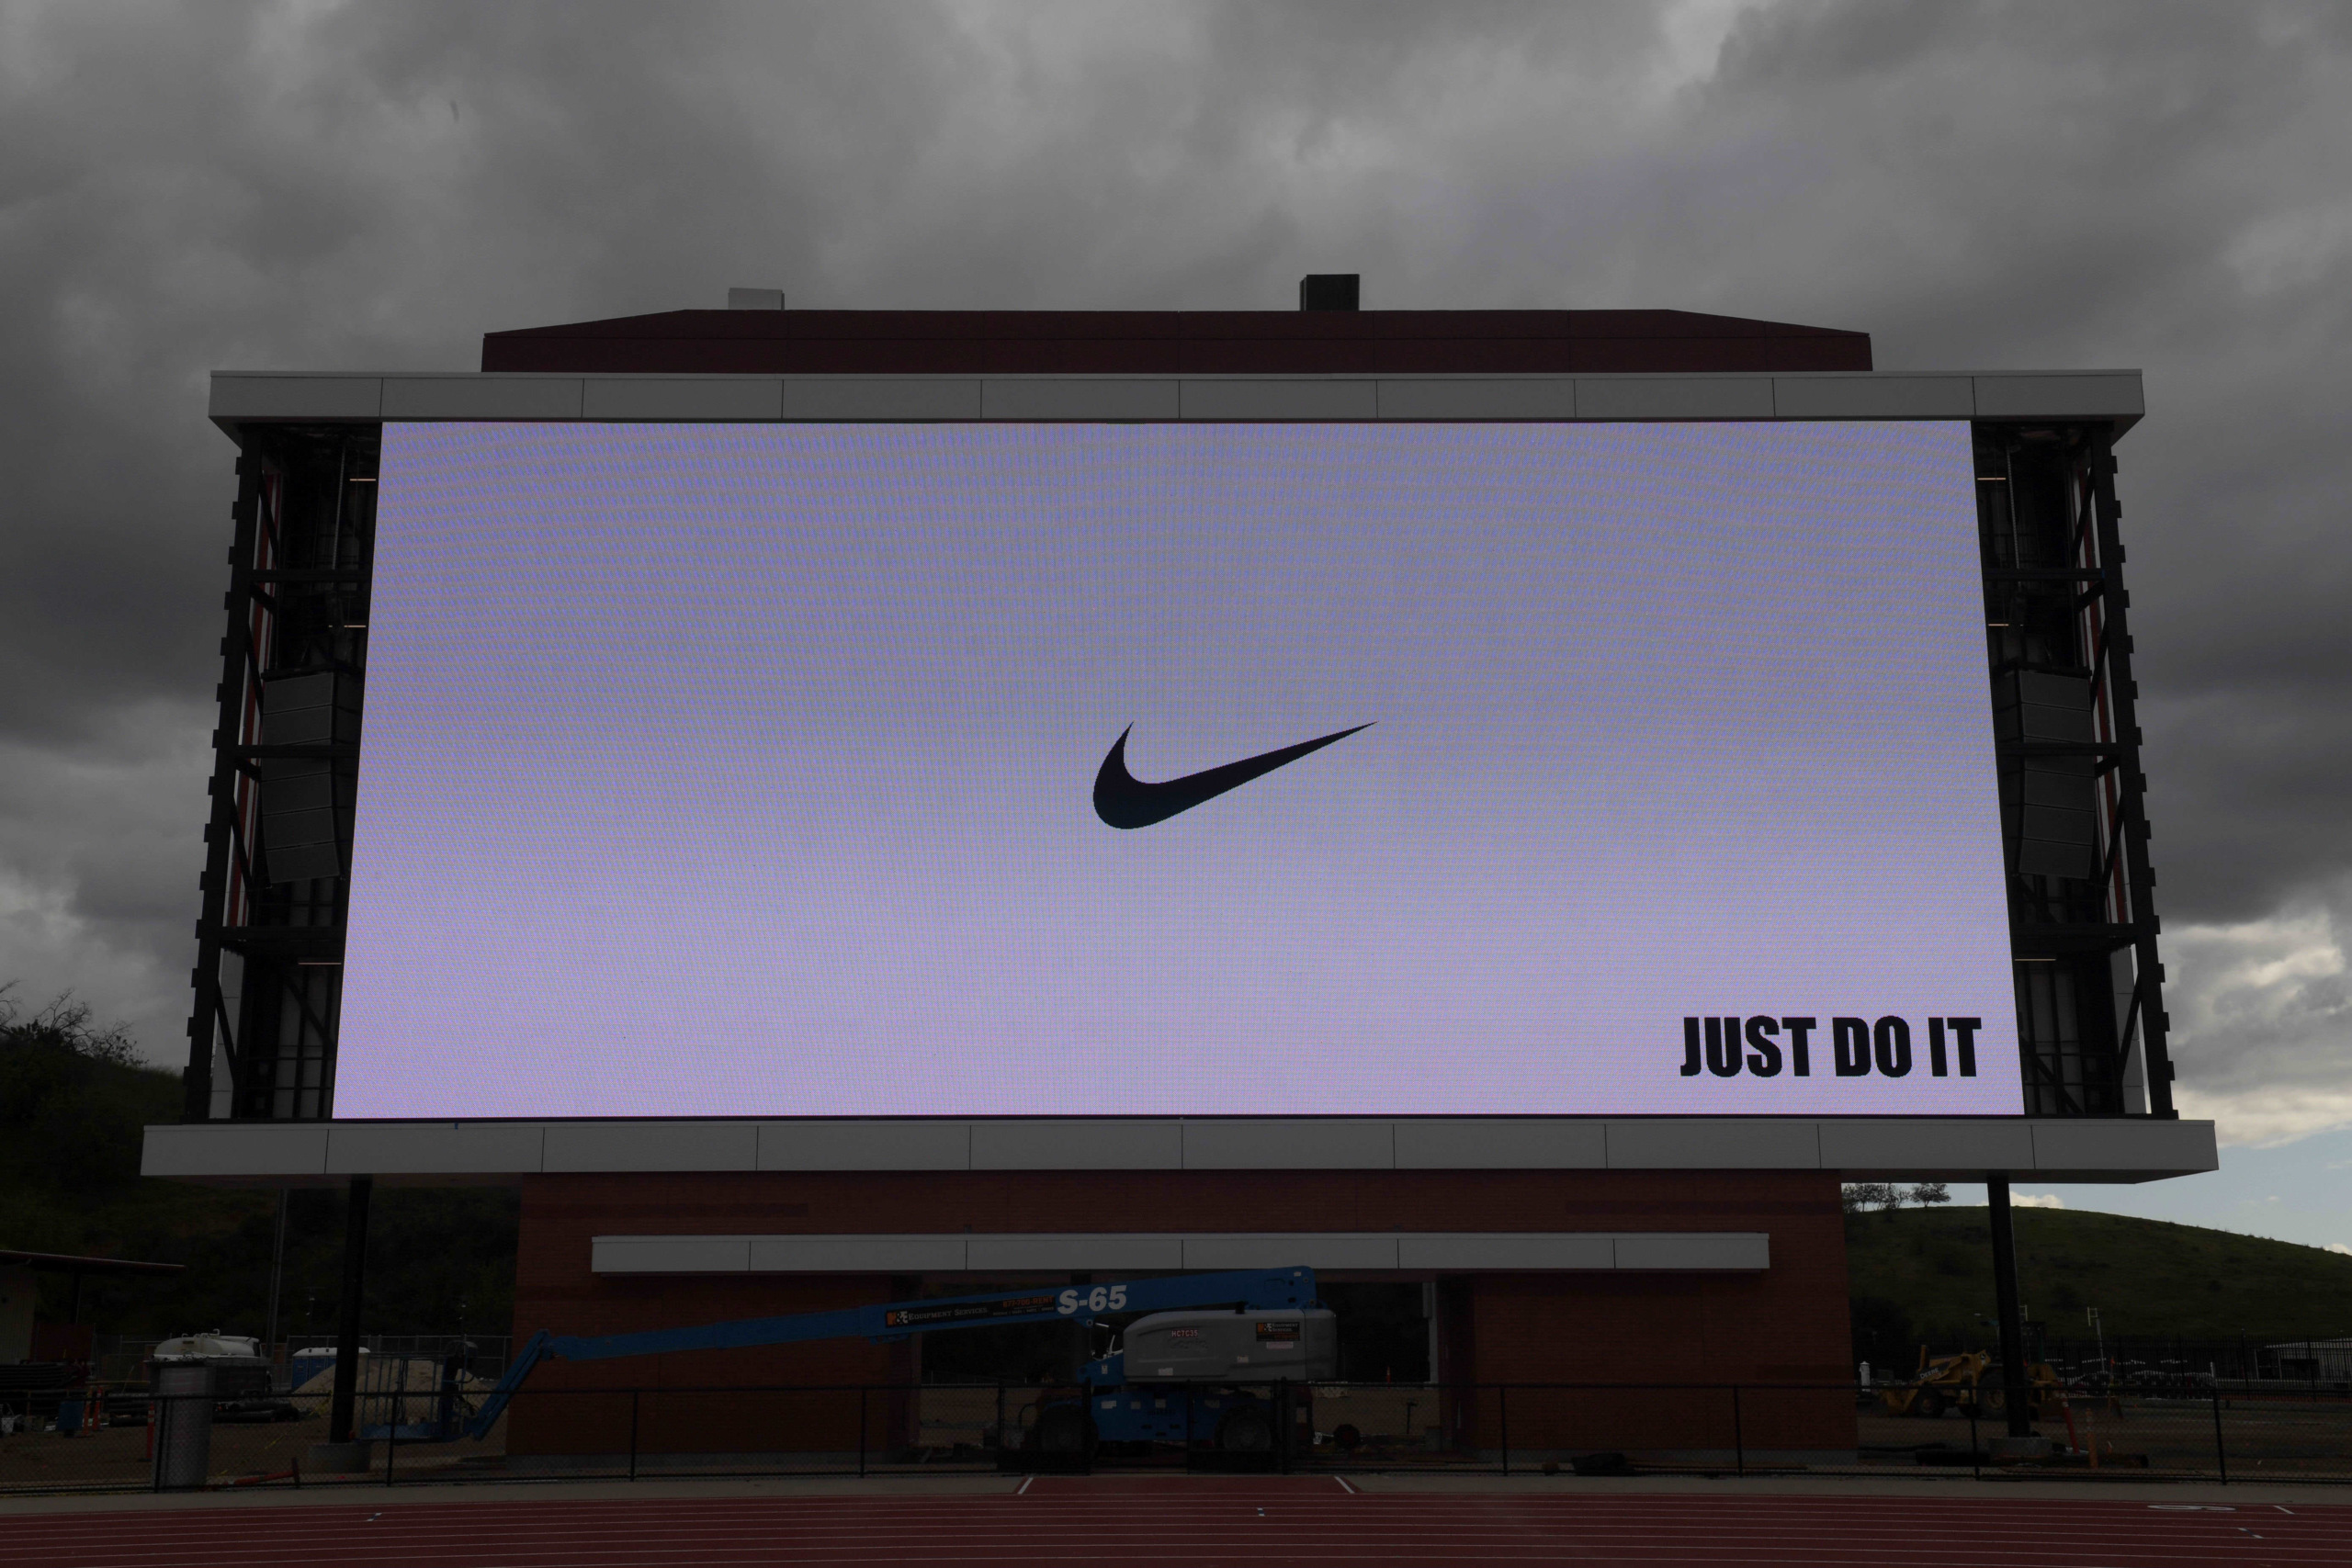 يكذب أو ملقاه طفح جلدي عميق Current Nike Ads Generate Qr Codes Net